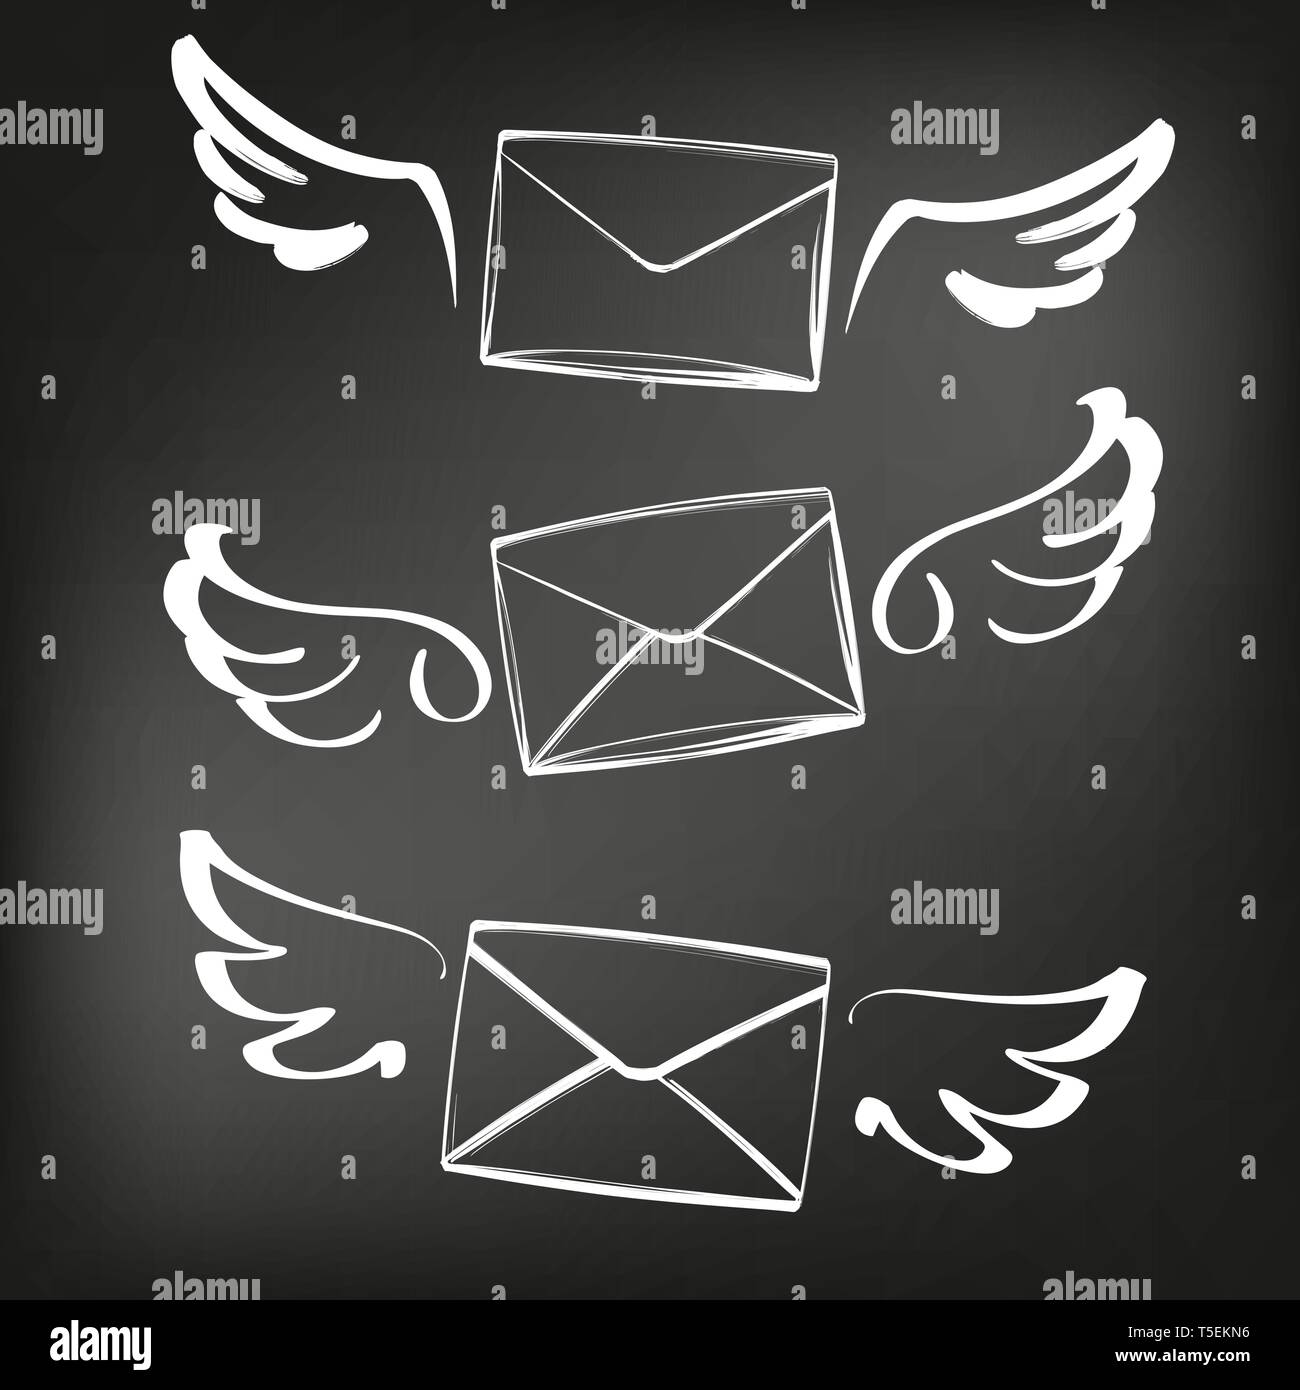 Résumé ailes avec nvelope, lettre jeu de croquis icon collection cartoon hand drawn vector illustration sketch, dessiné à la craie sur un tableau noir Illustration de Vecteur